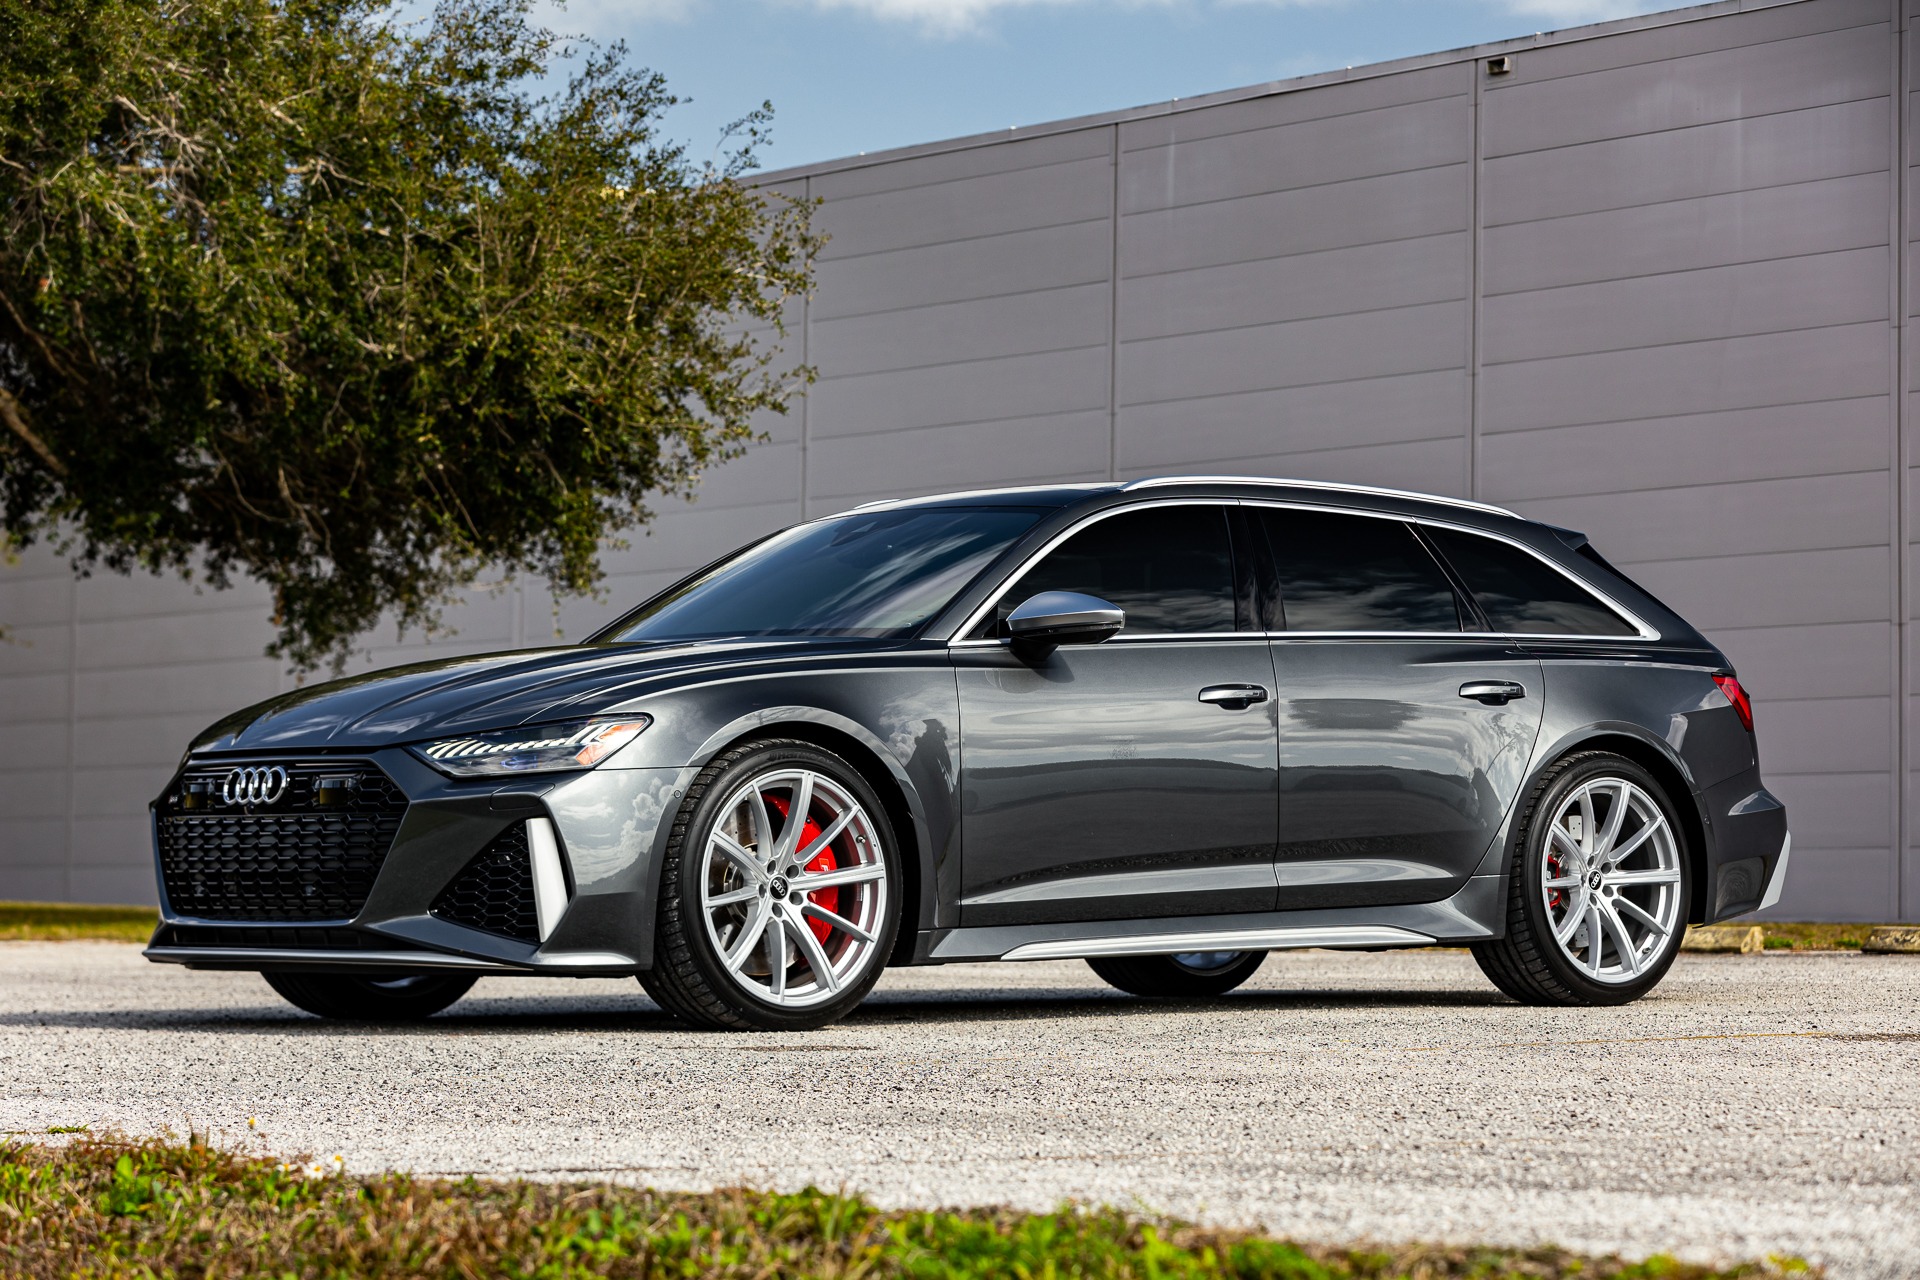 Used 2021 Audi RS 6 Avant 4.0T quattro Avant for sale $148,880 at McLaren Orlando LLC in Titusville FL 32780 1